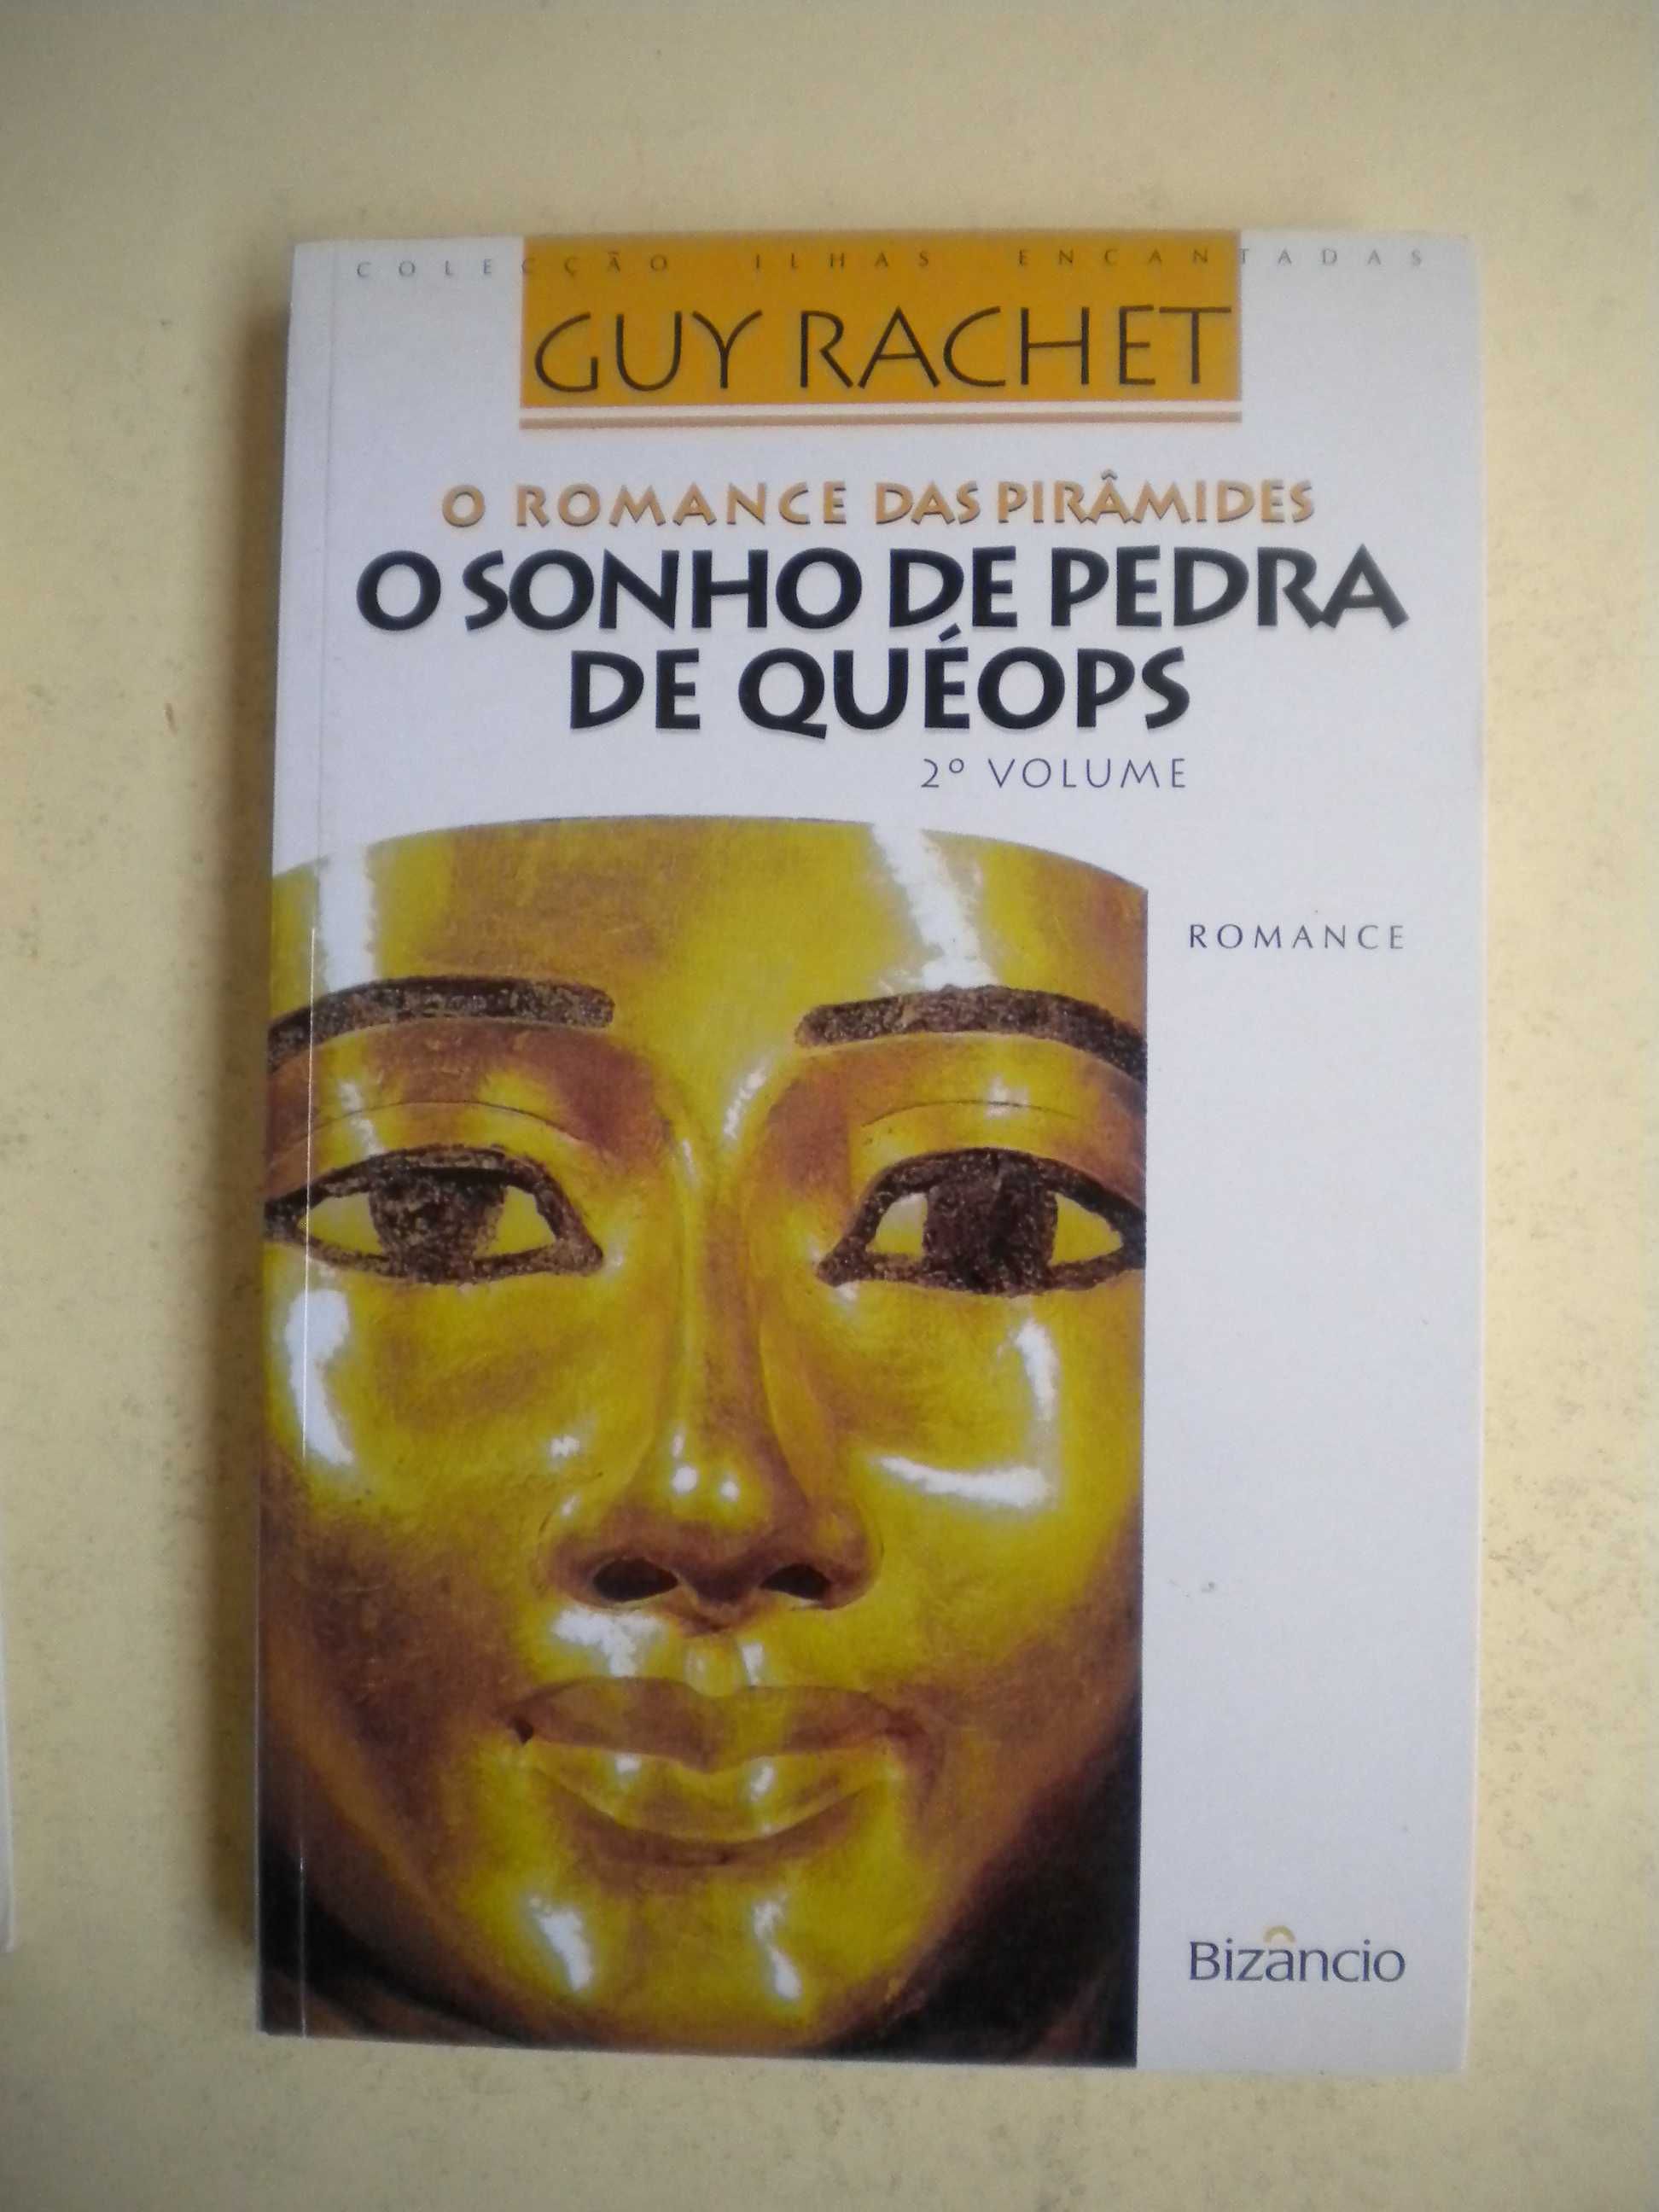 O Romance das Pirâmides
de Guy Rachet
Trilogia